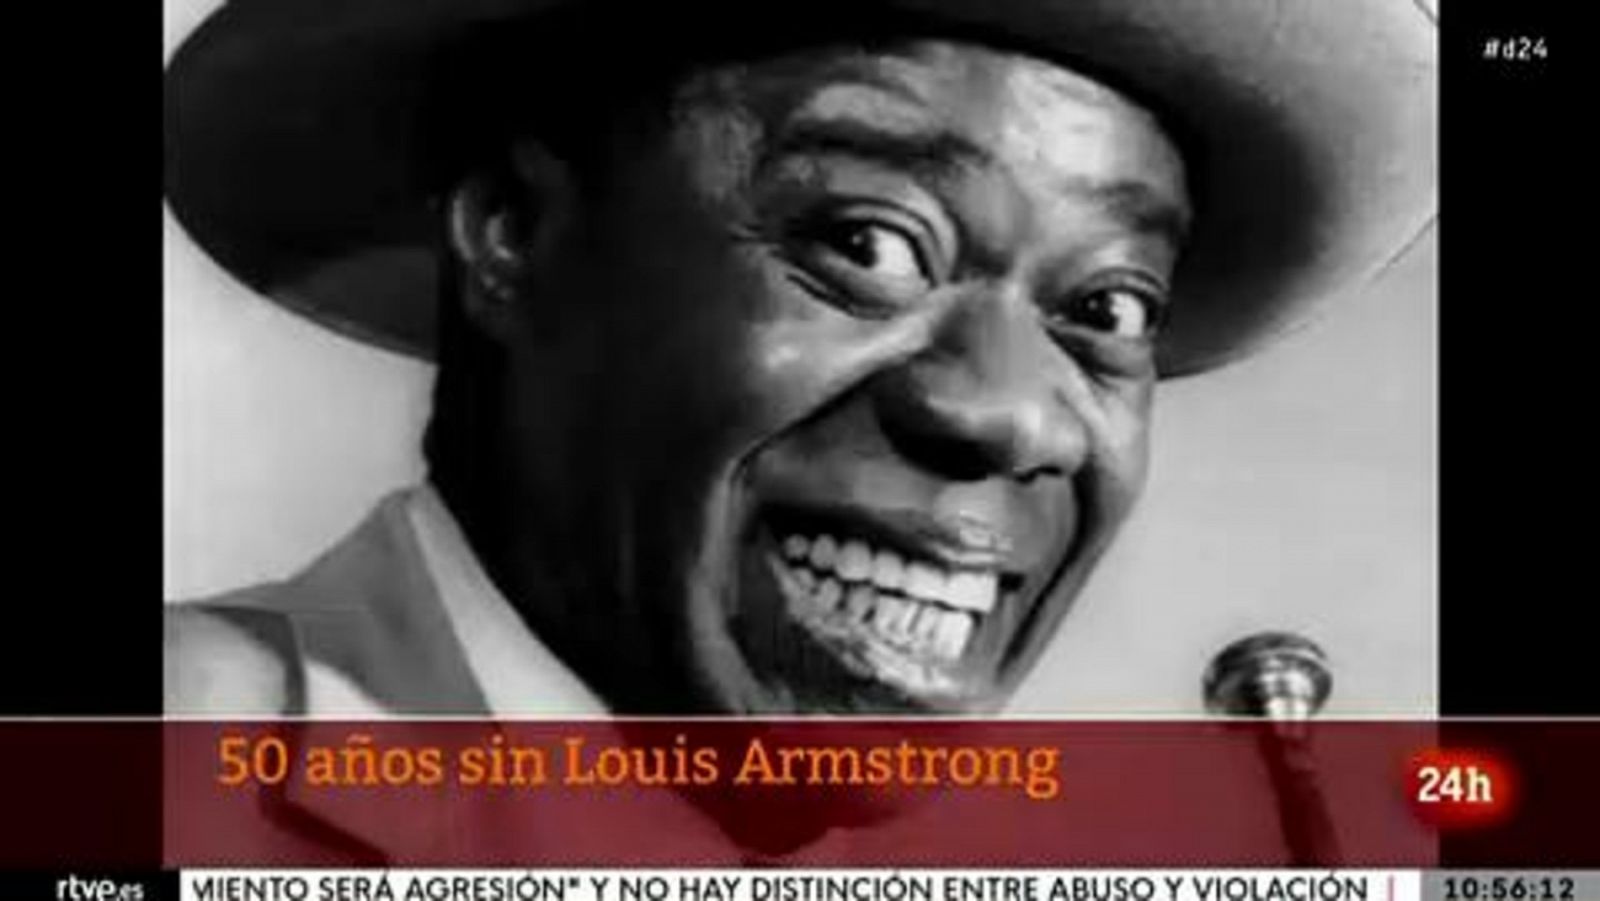 Se cumplen 50 años sin Louis Armstrong